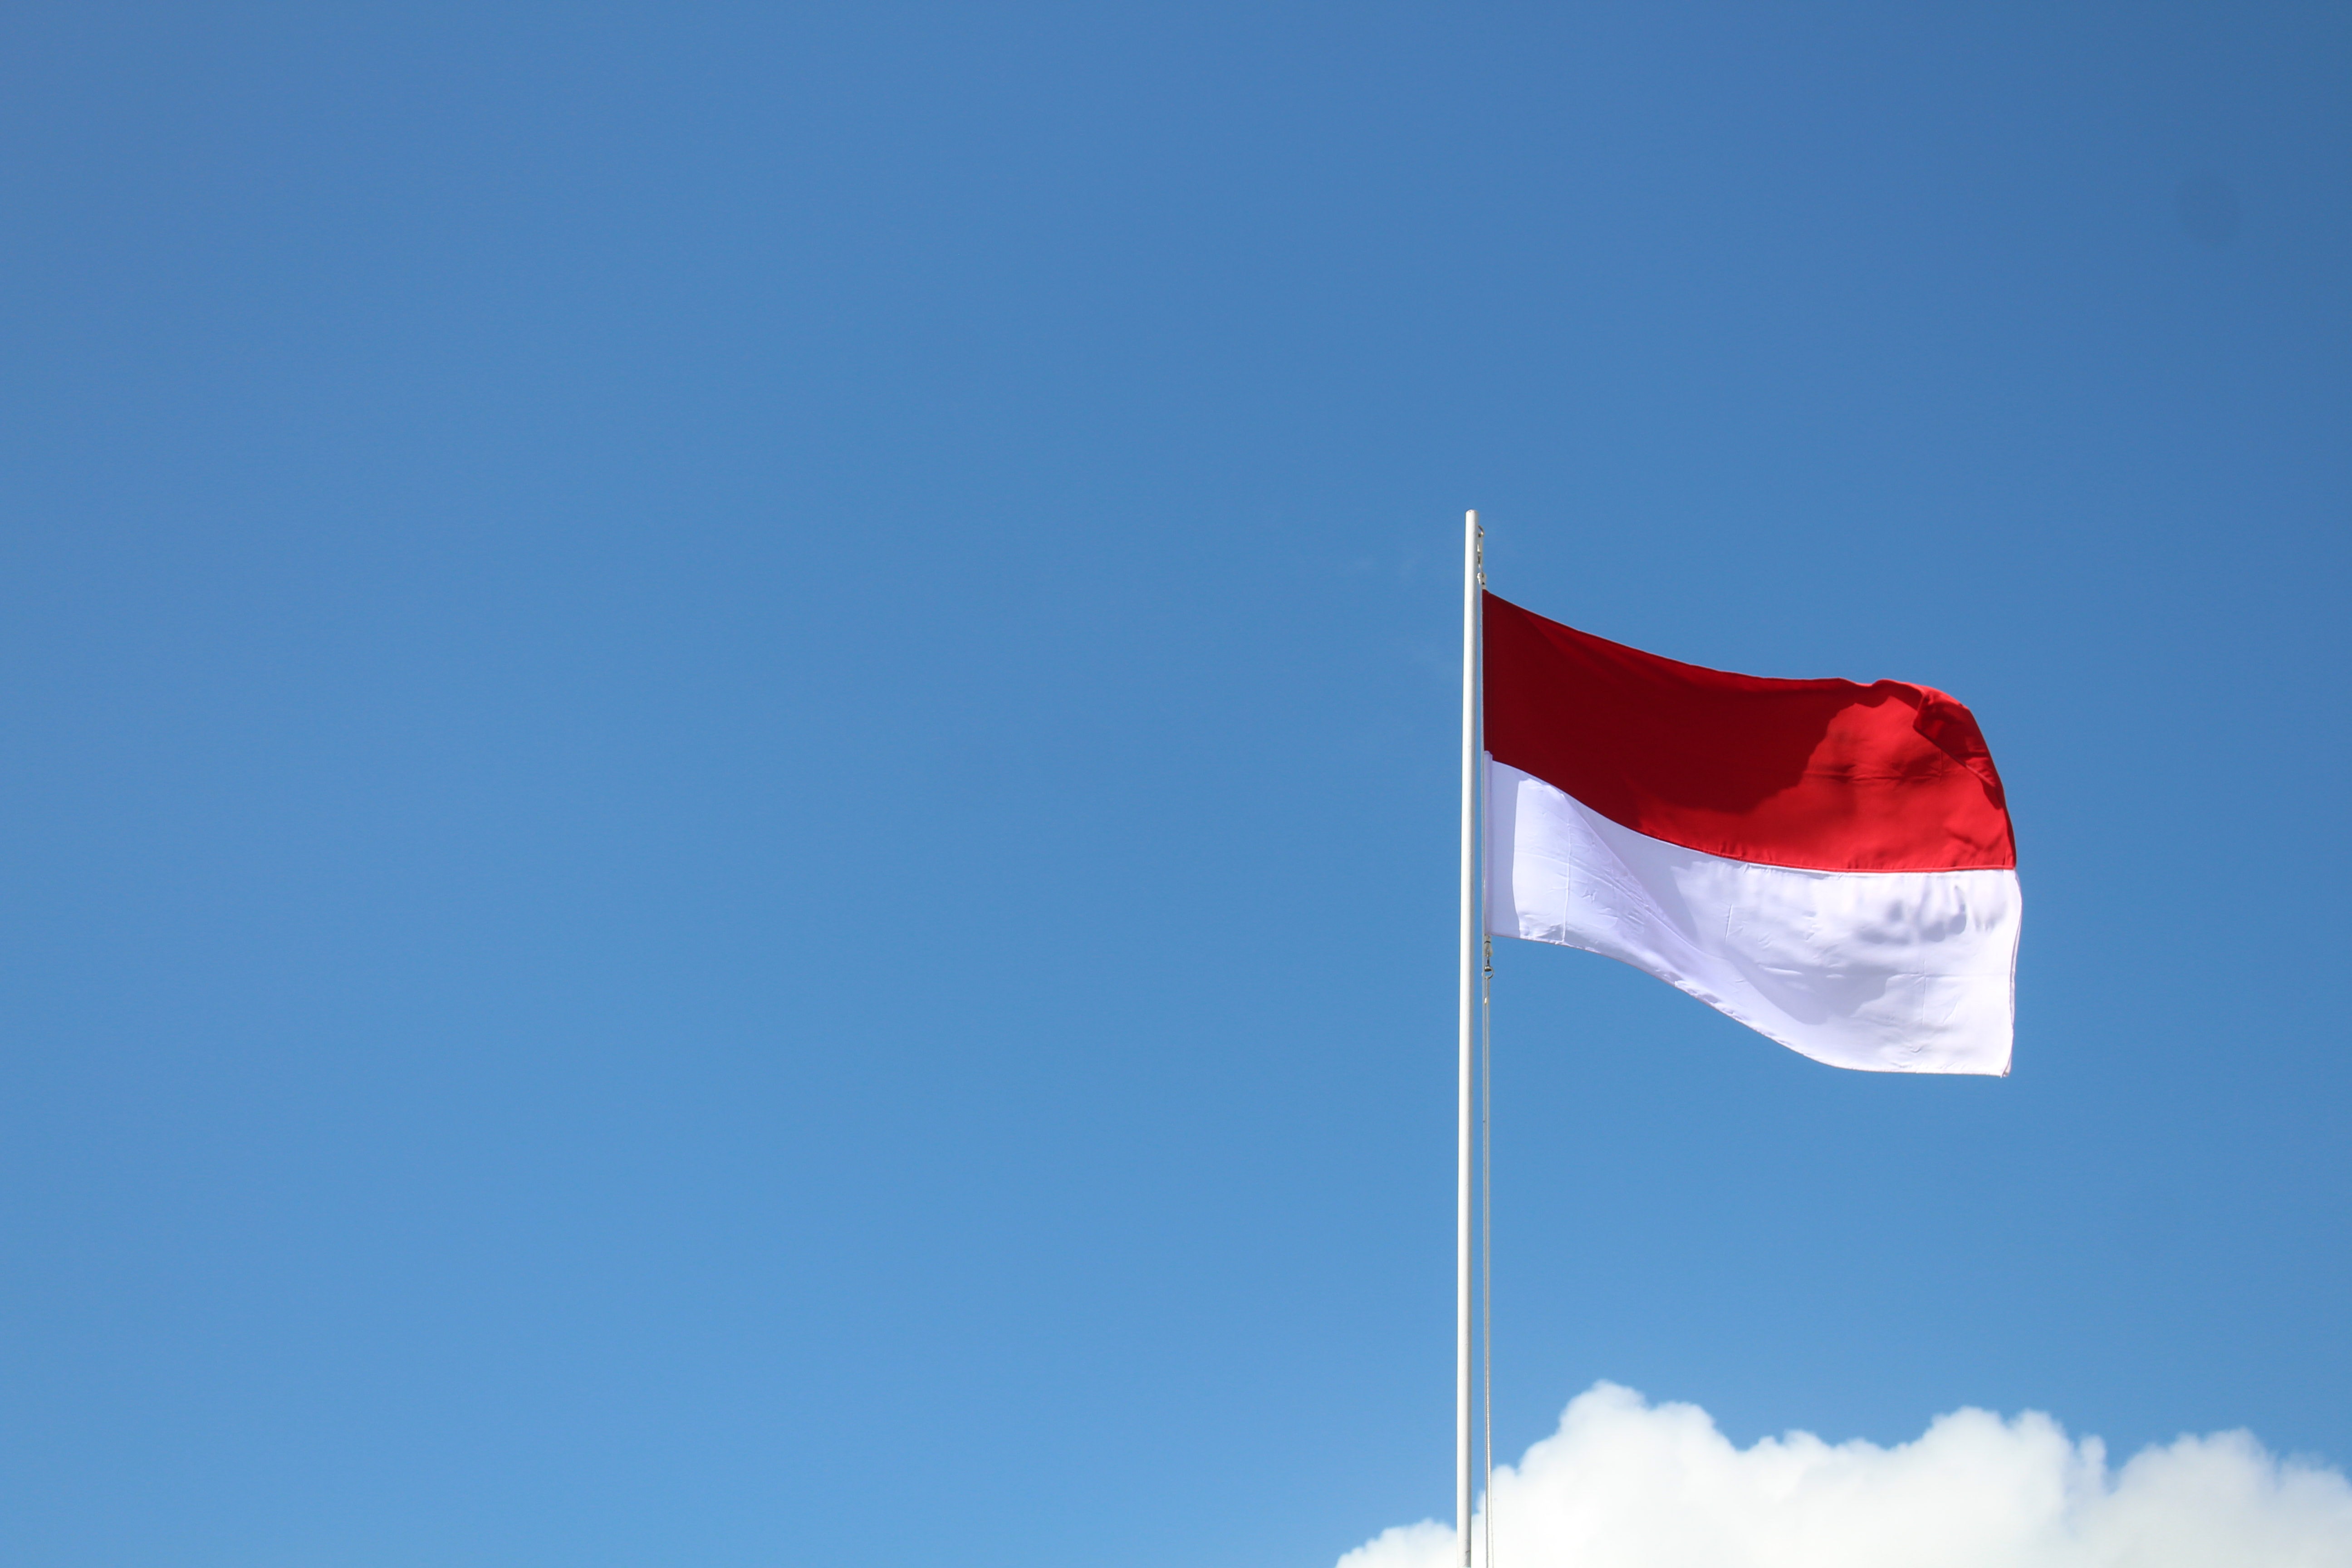 Indonesian lippu salossa vasten sinistä taivasta.